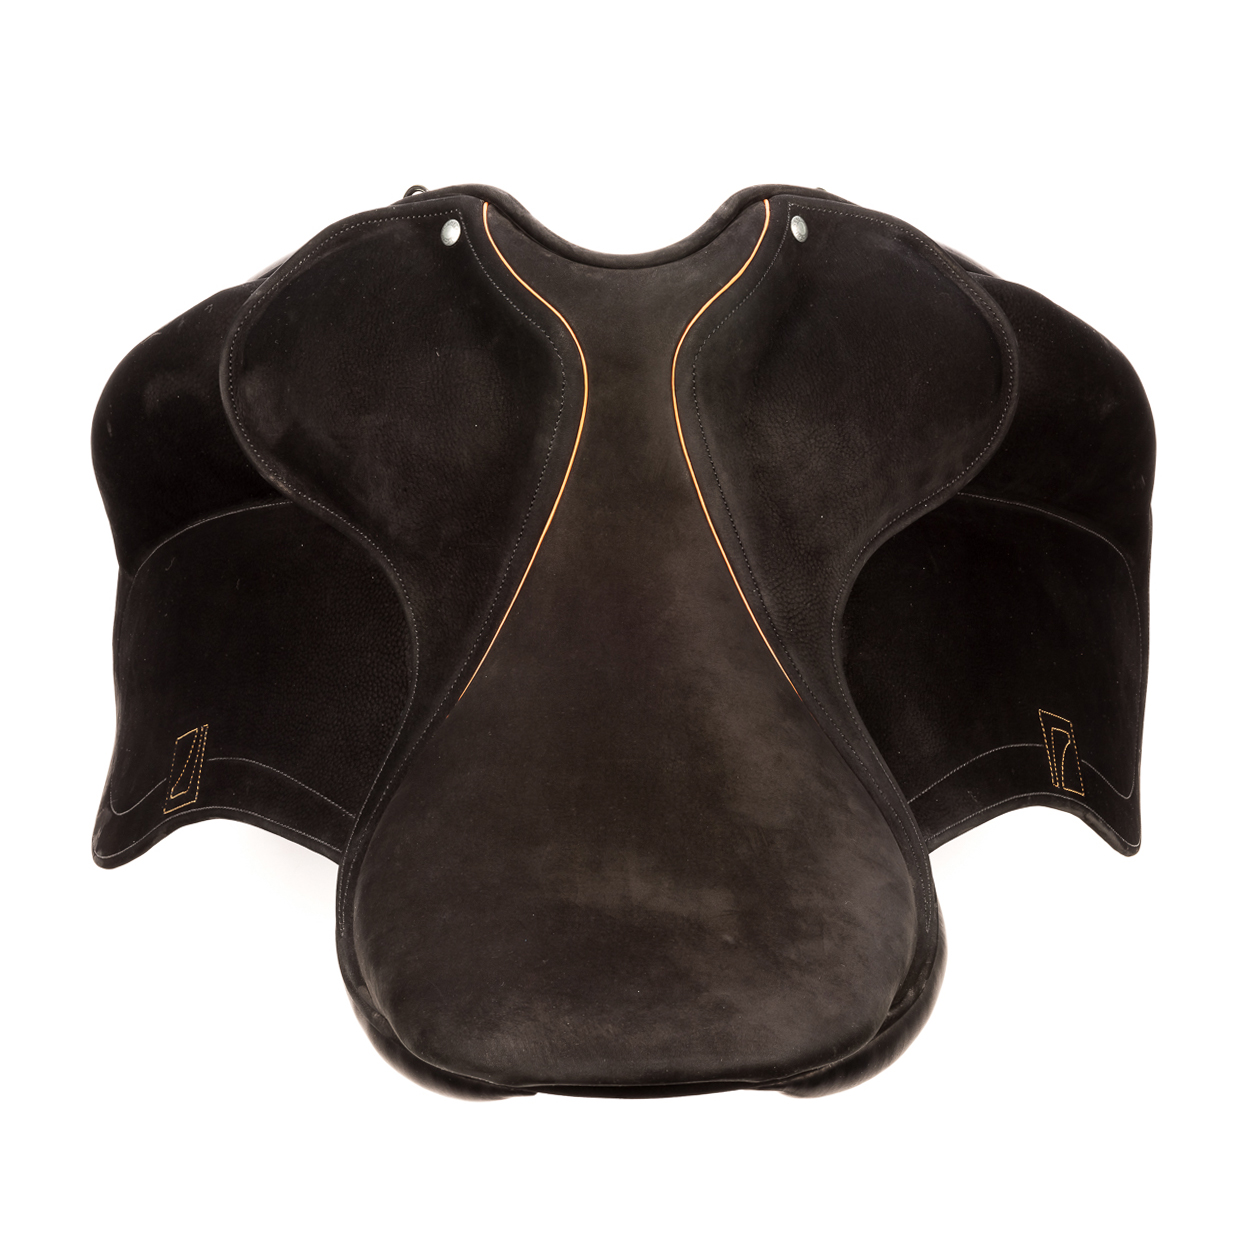 Modèle DAC dressage selle sur-mesure Childéric cuir bespoke saddle fait en France made in France fait main